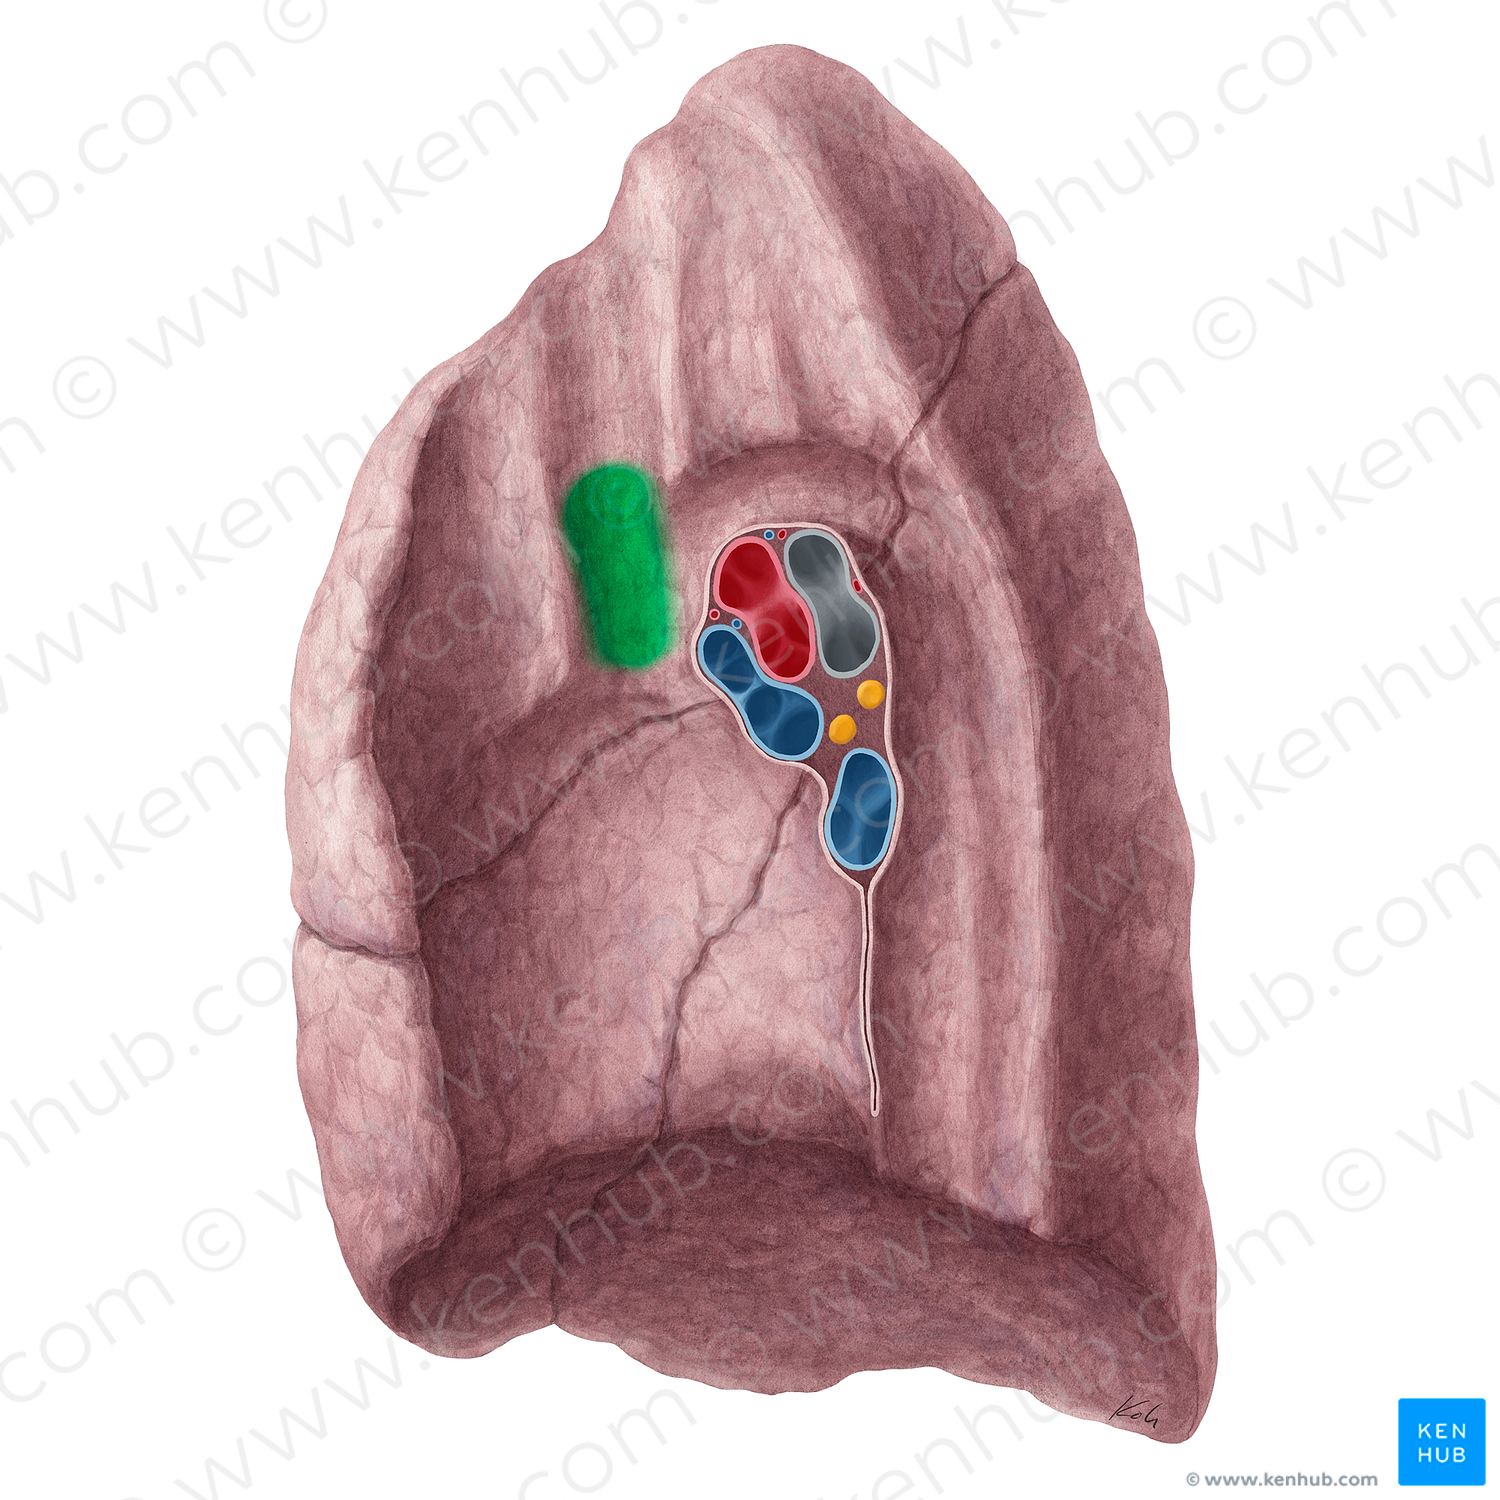 Impression for superior vena cava of right lung (#21318)